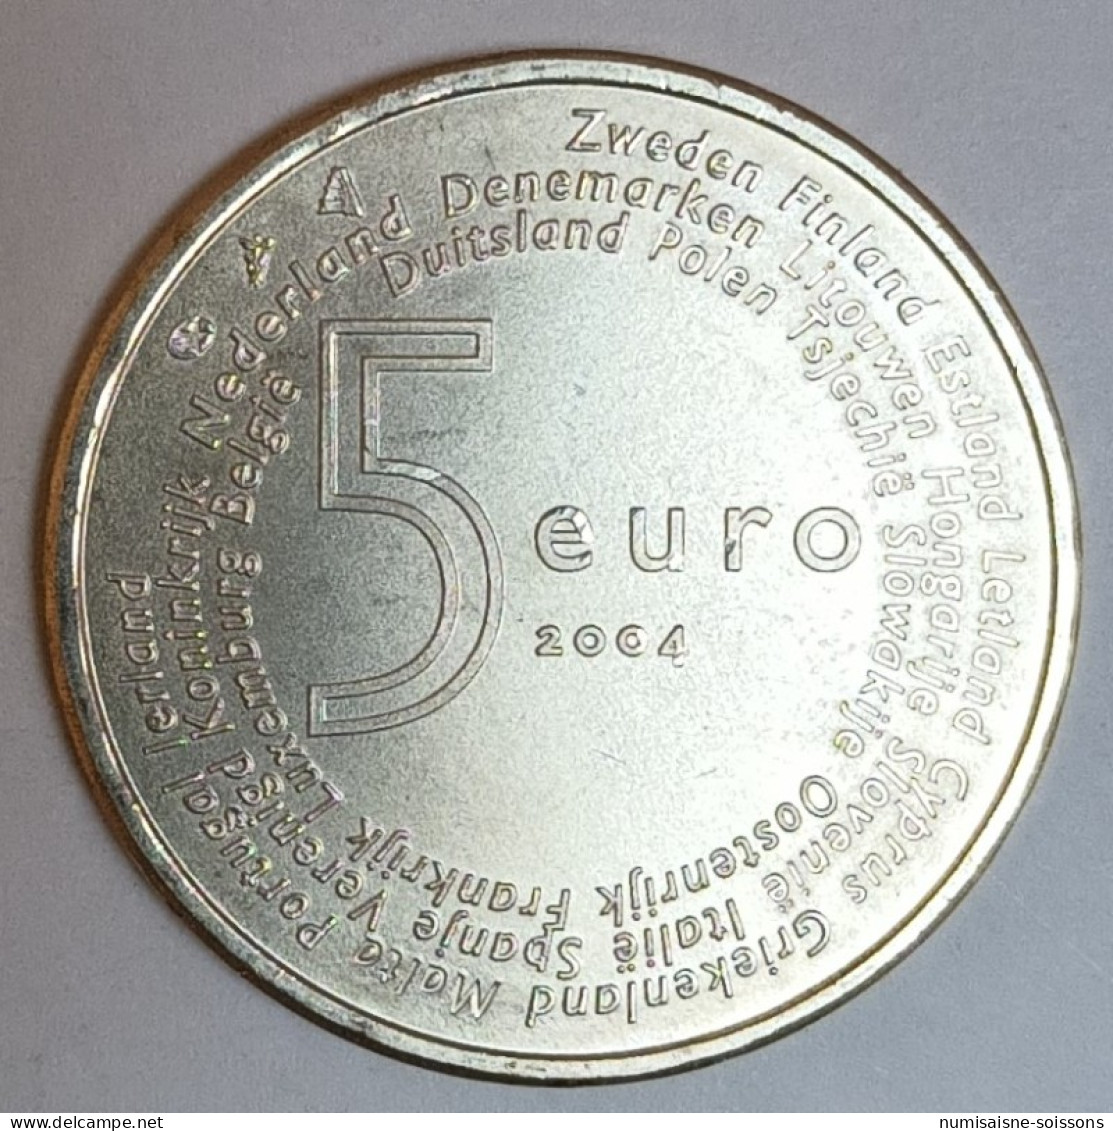 PAYS BAS - KM 252 - 5 EURO 2004 - ELARGISSEMENT DE L'UNION EUROPEENNE - ARGENT - SPL - Pays-Bas